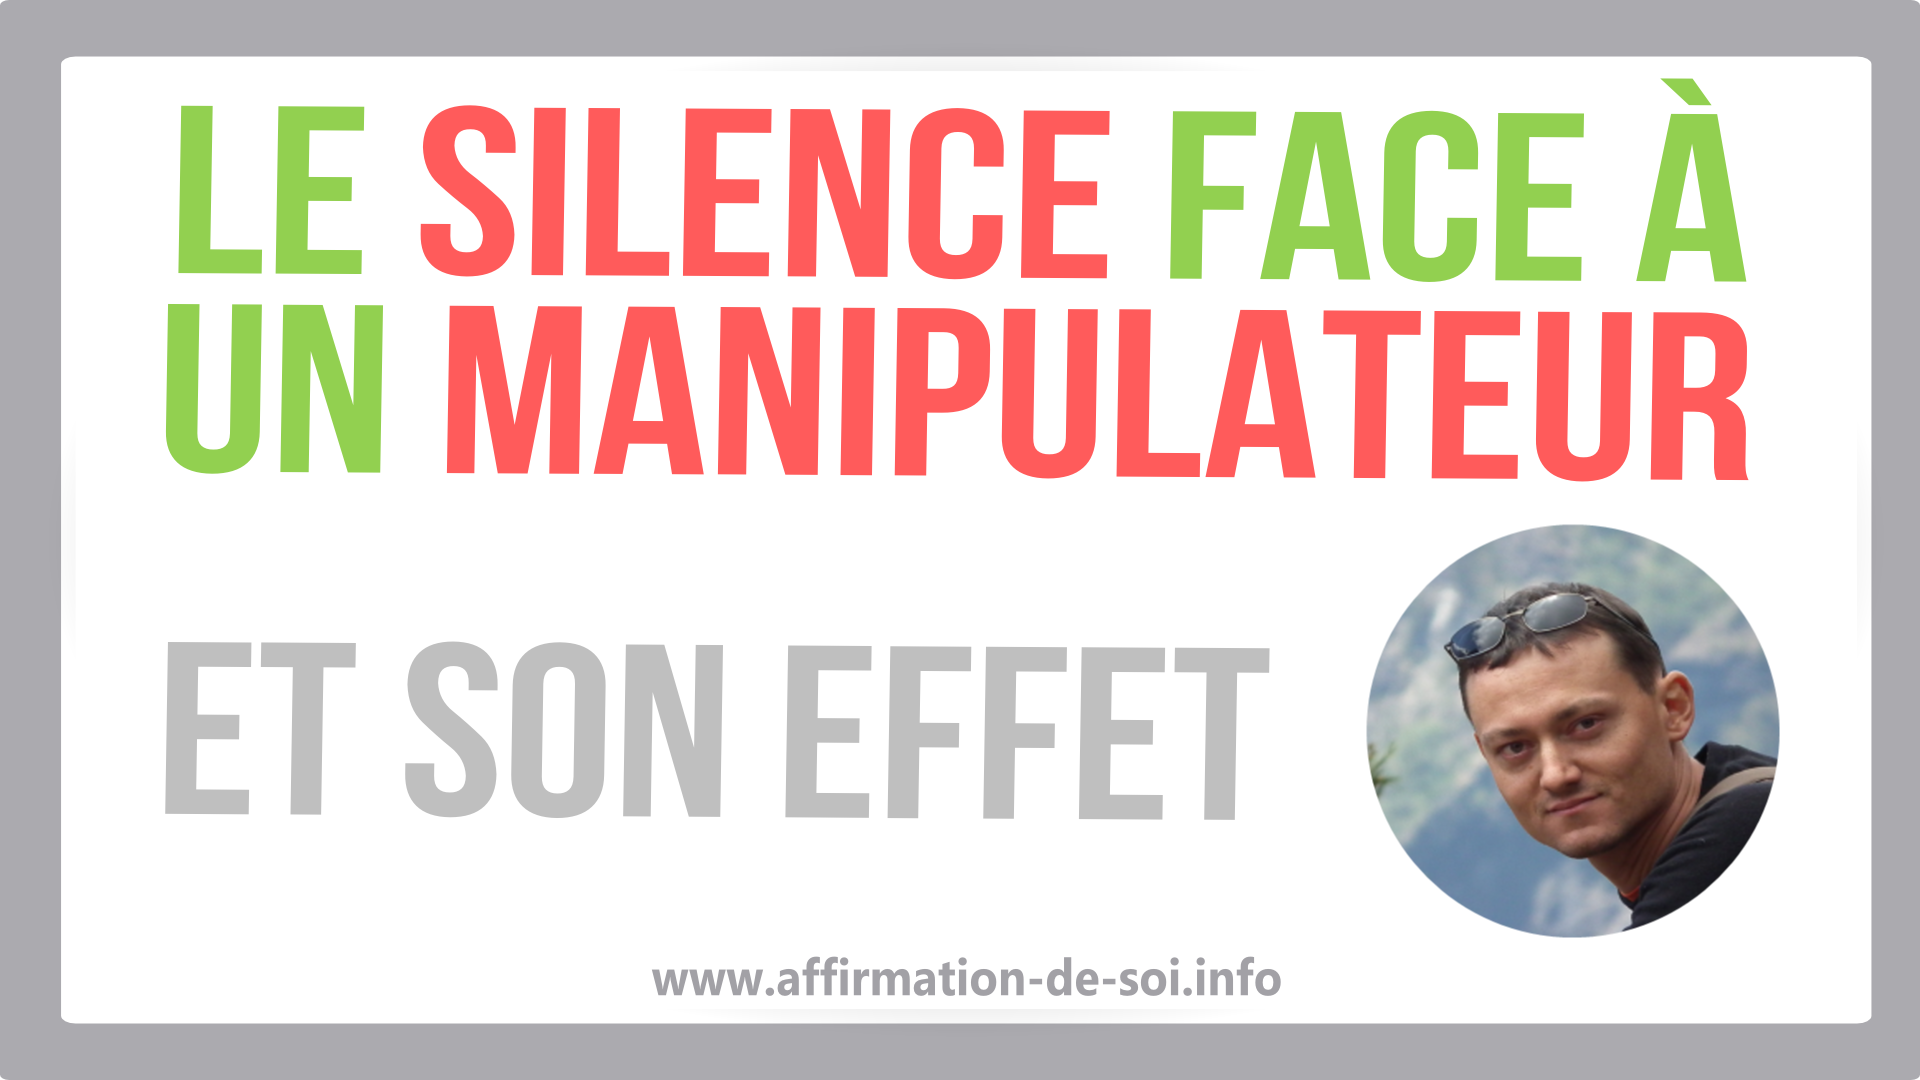 le silence face a un manipulateur - effet du silence sur le manipulateur (pervers narcissique)